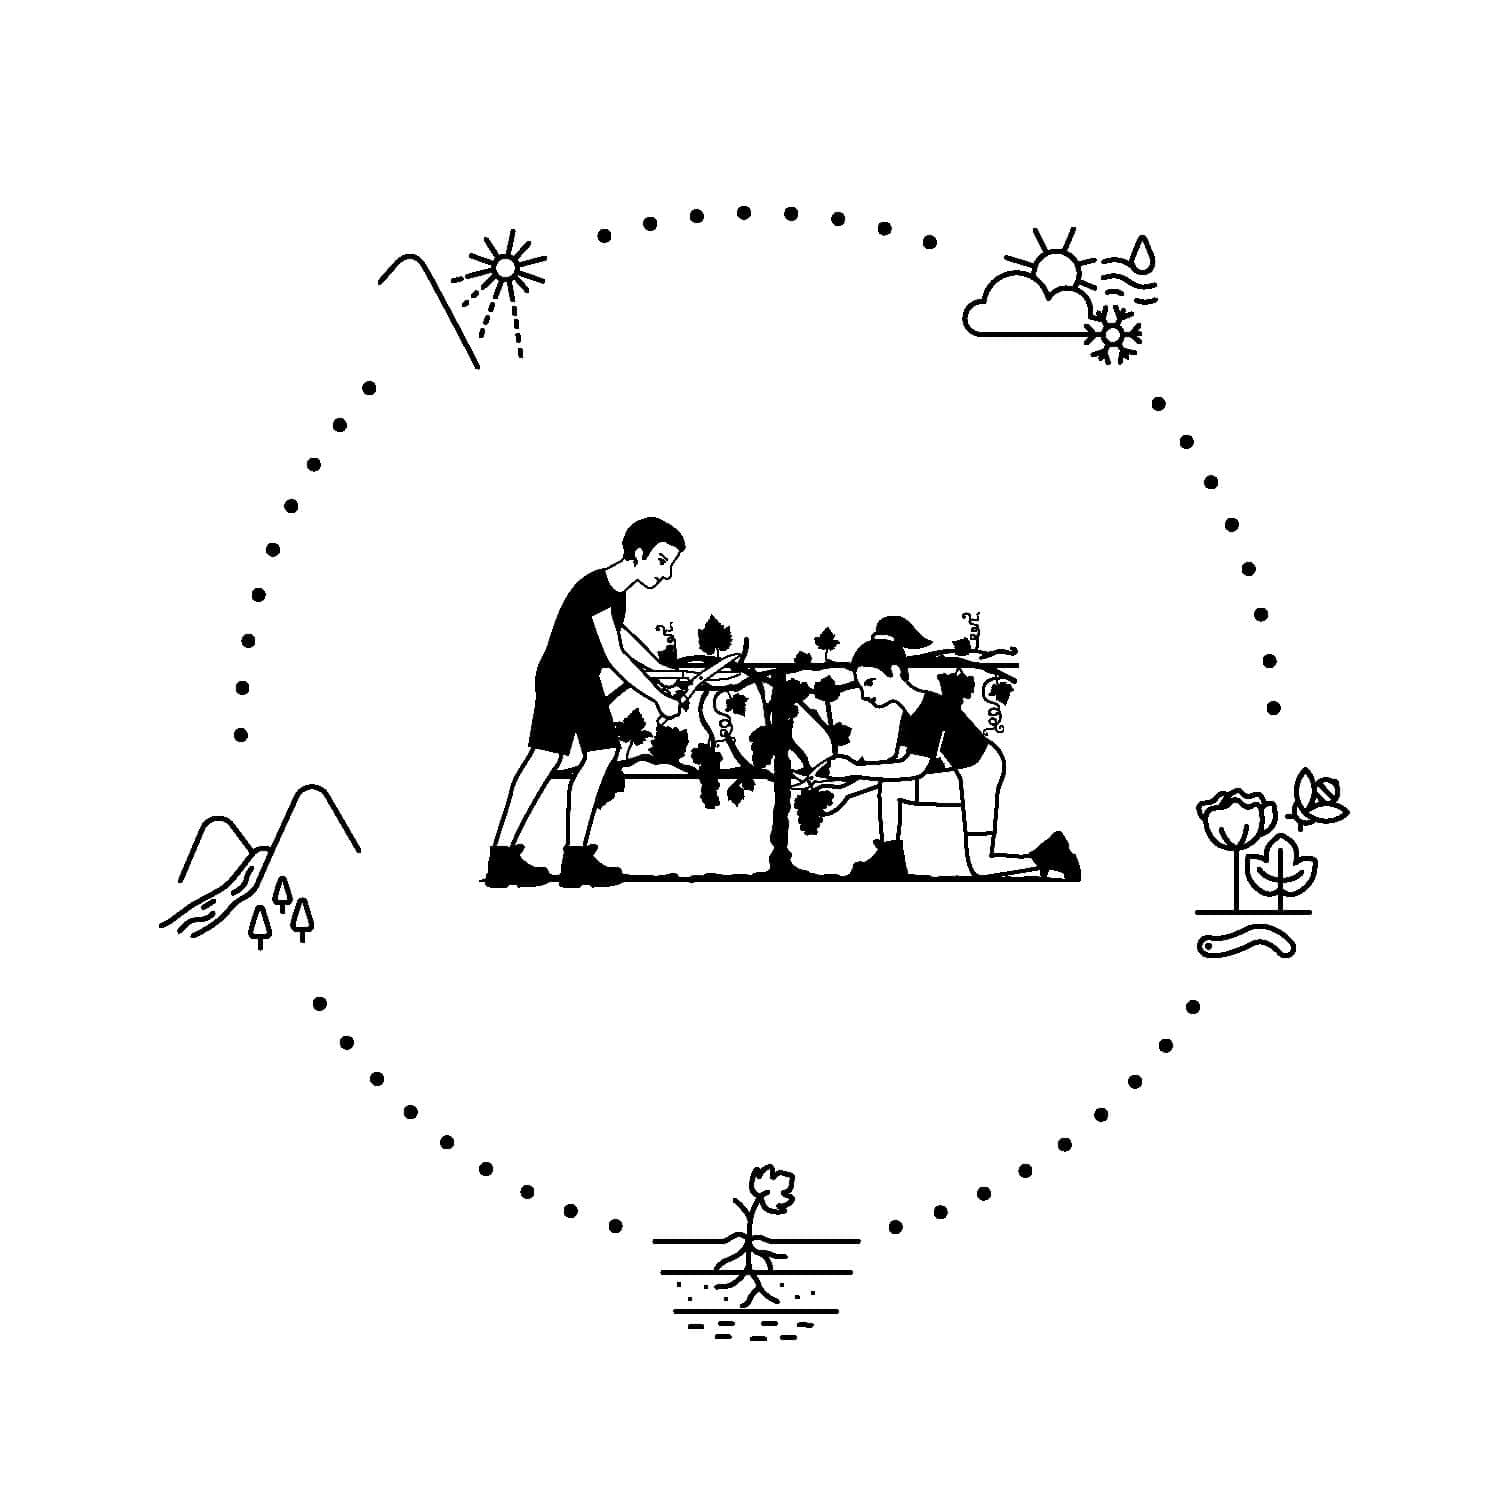 pictogramme des terroirs dessiné par ichetkar pour la nouvelle signalétique de la cité du vin de bordeaux